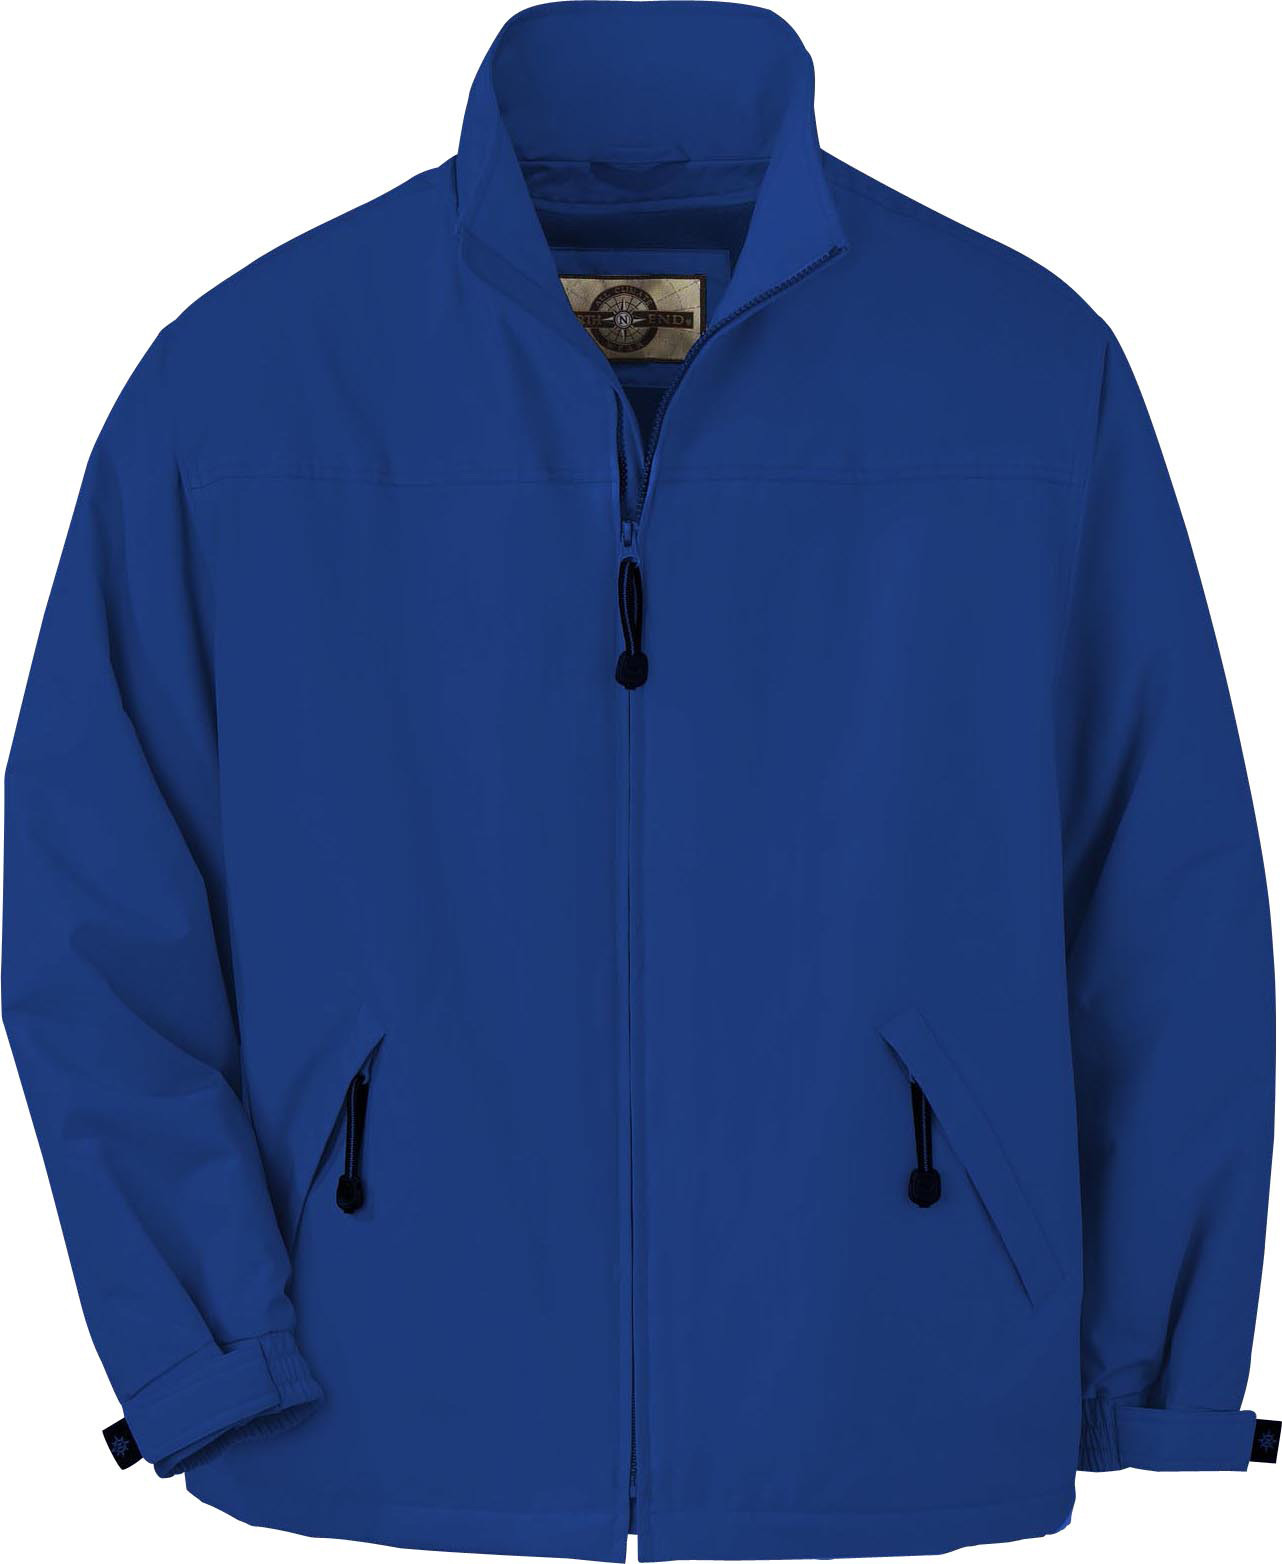 Ash City UTK 2 Warm.Logik 88031 - Men's Insulated Mid-Length Jacket